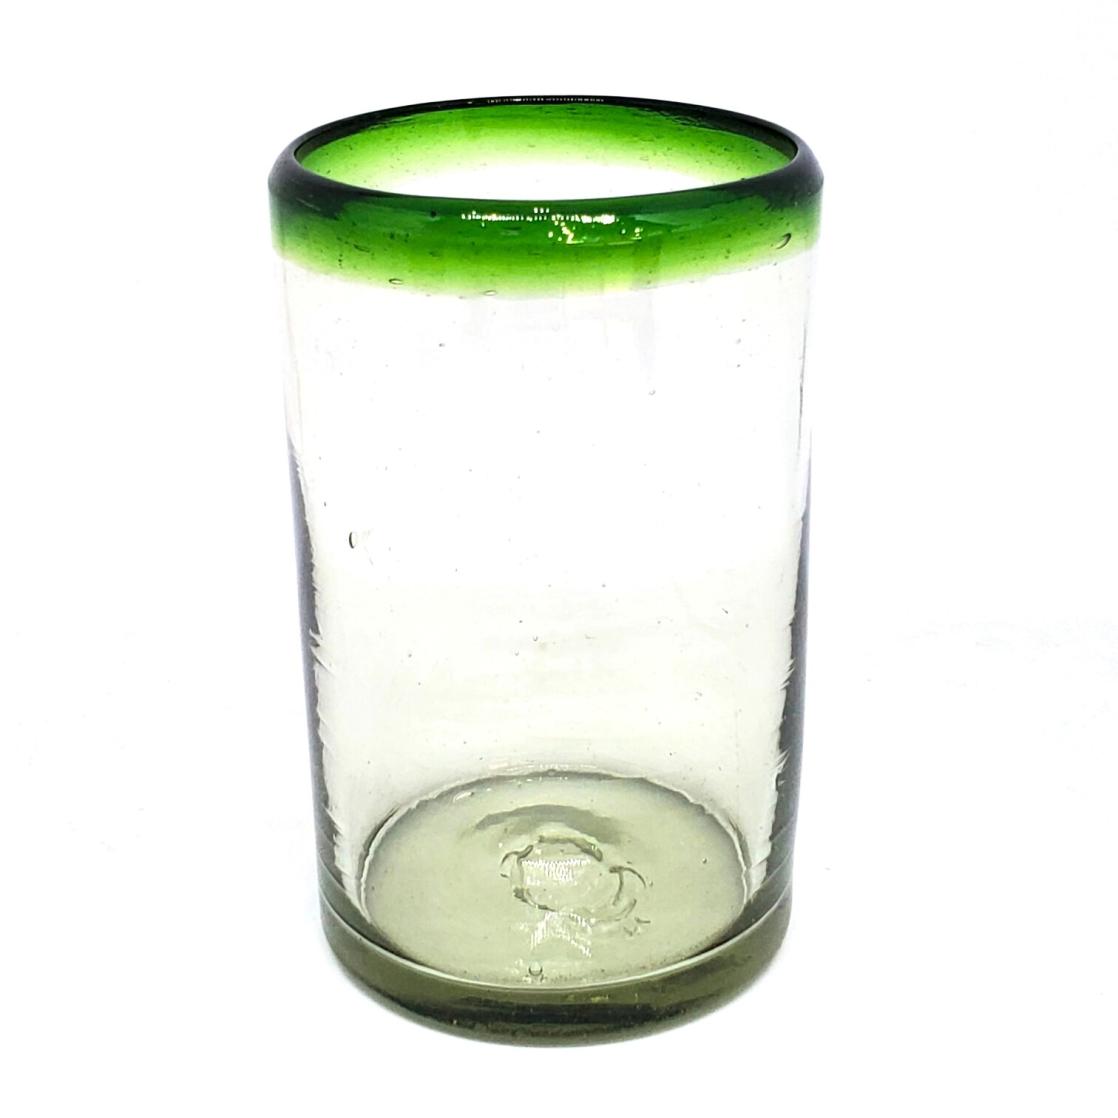 Vasos de Vidrio Soplado al Mayoreo / vasos grandes con borde verde esmeralda / stos artesanales vasos le darn un toque clsico a su bebida favorita.